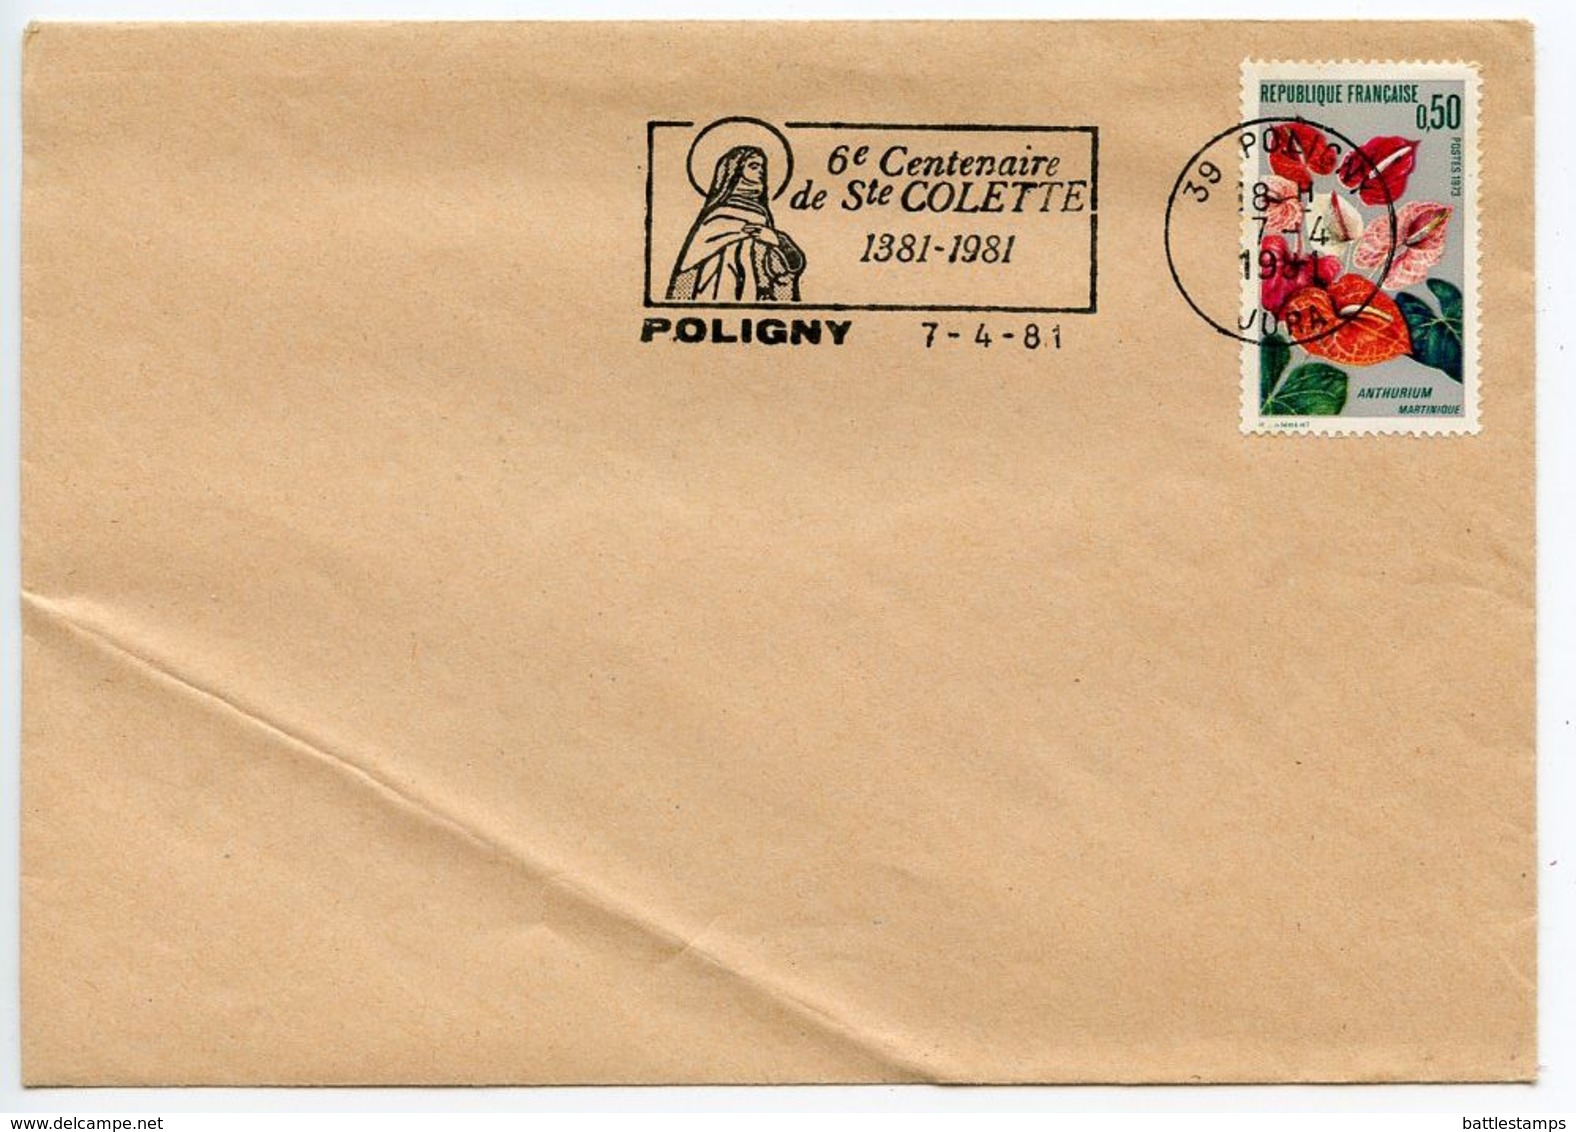 France 1981 Poligny Cover, 6th Centenary Of Saint Colette Postmark - Commemorative Postmarks